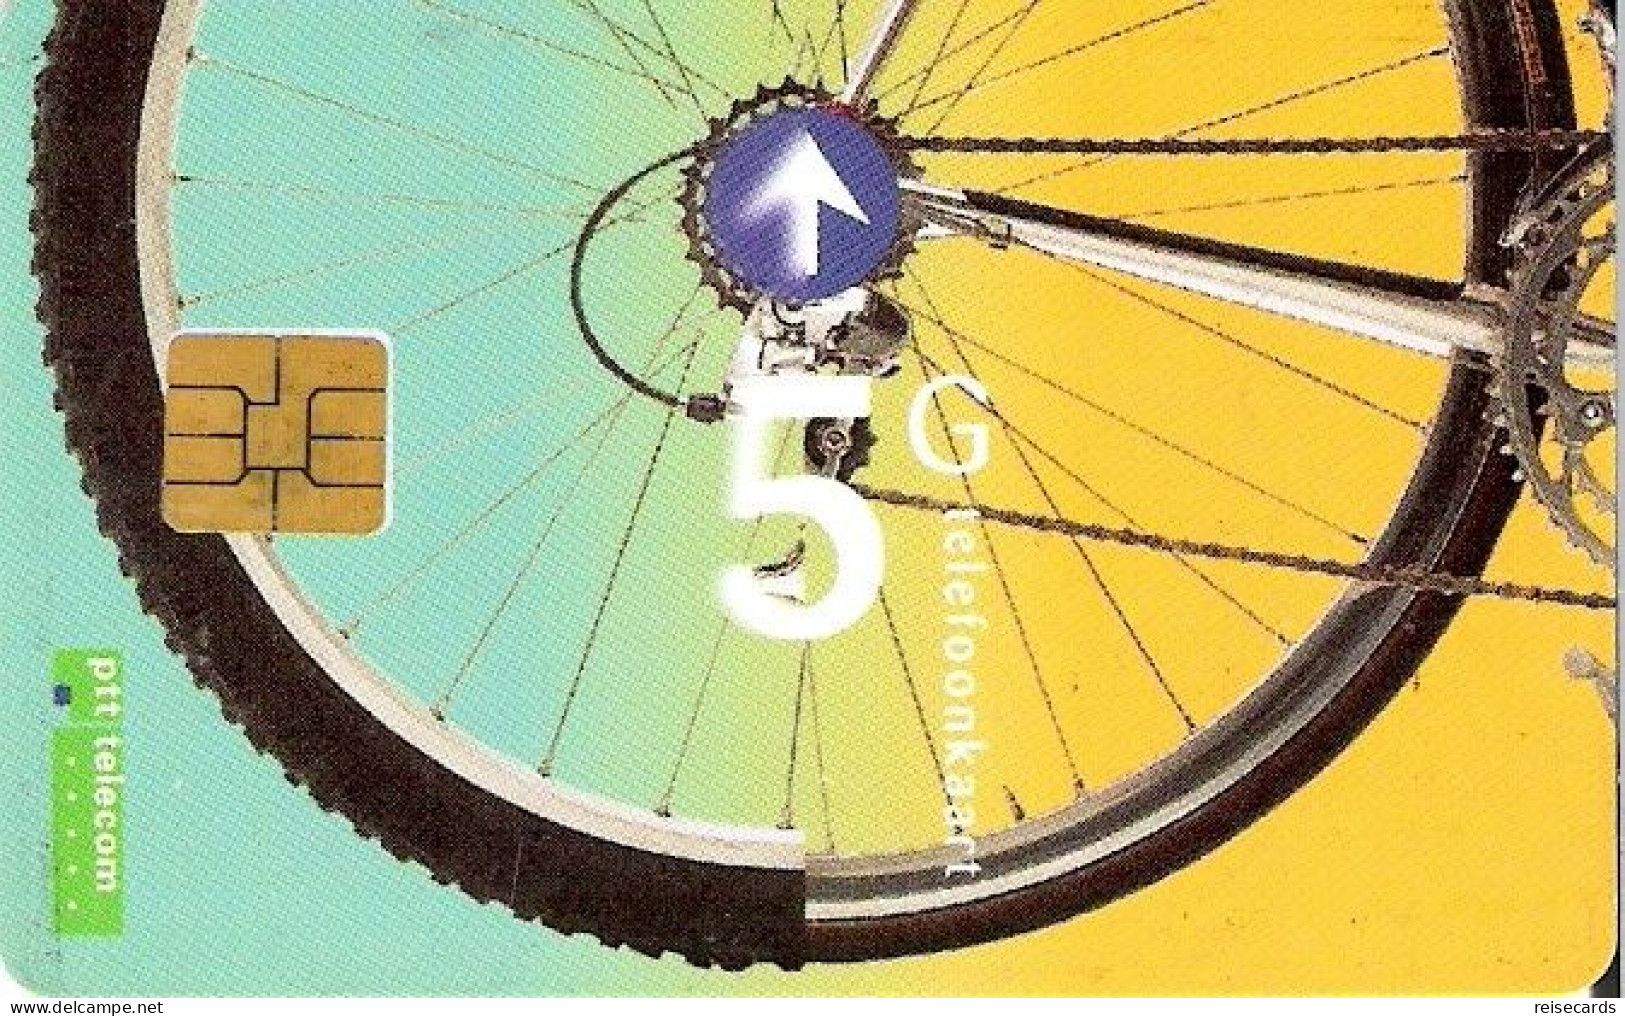 Netherlands: Ptt Telecom - 1995 Bike - öffentlich